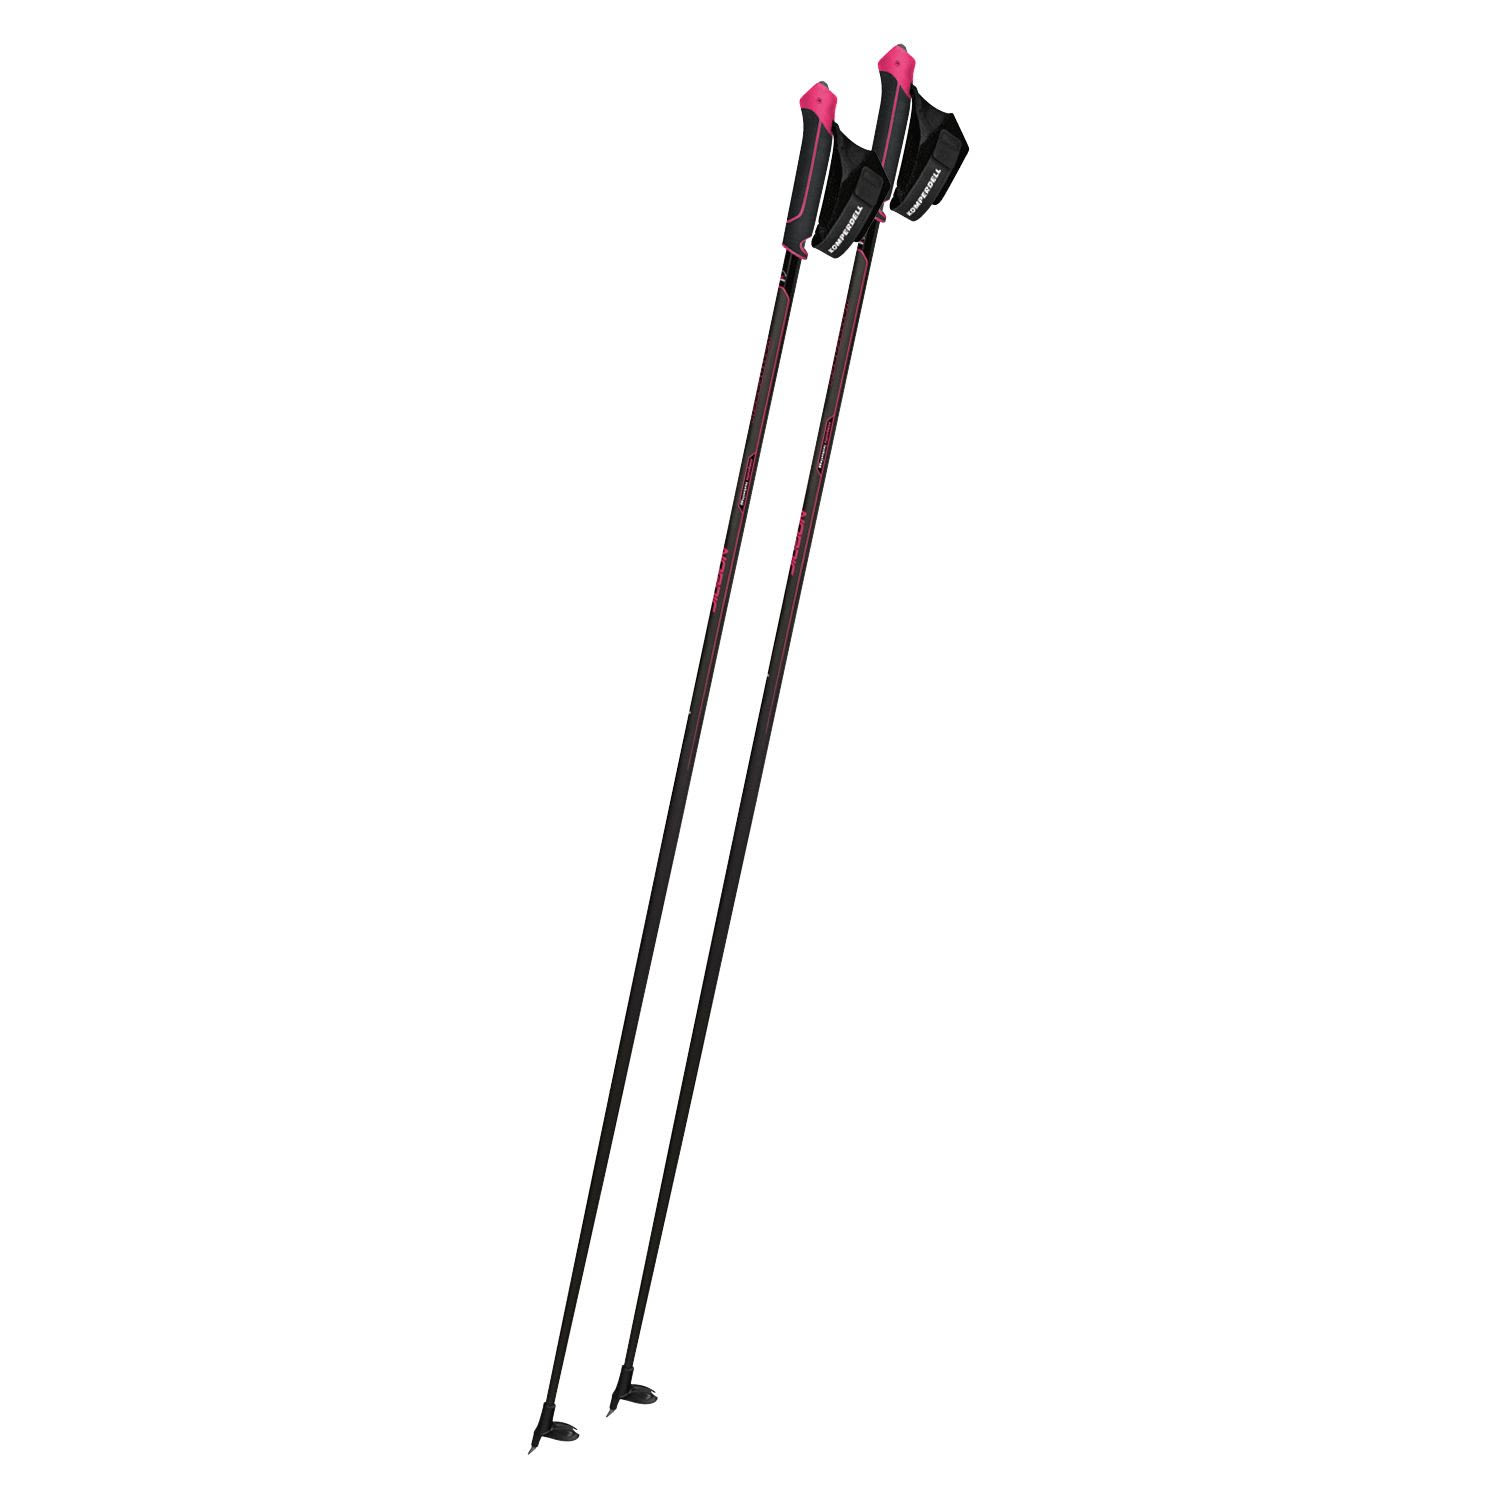 Komperdell Nordic Cx-100 Sport Pink / Schwarz | Größe 160 cm |  Langlaufstock